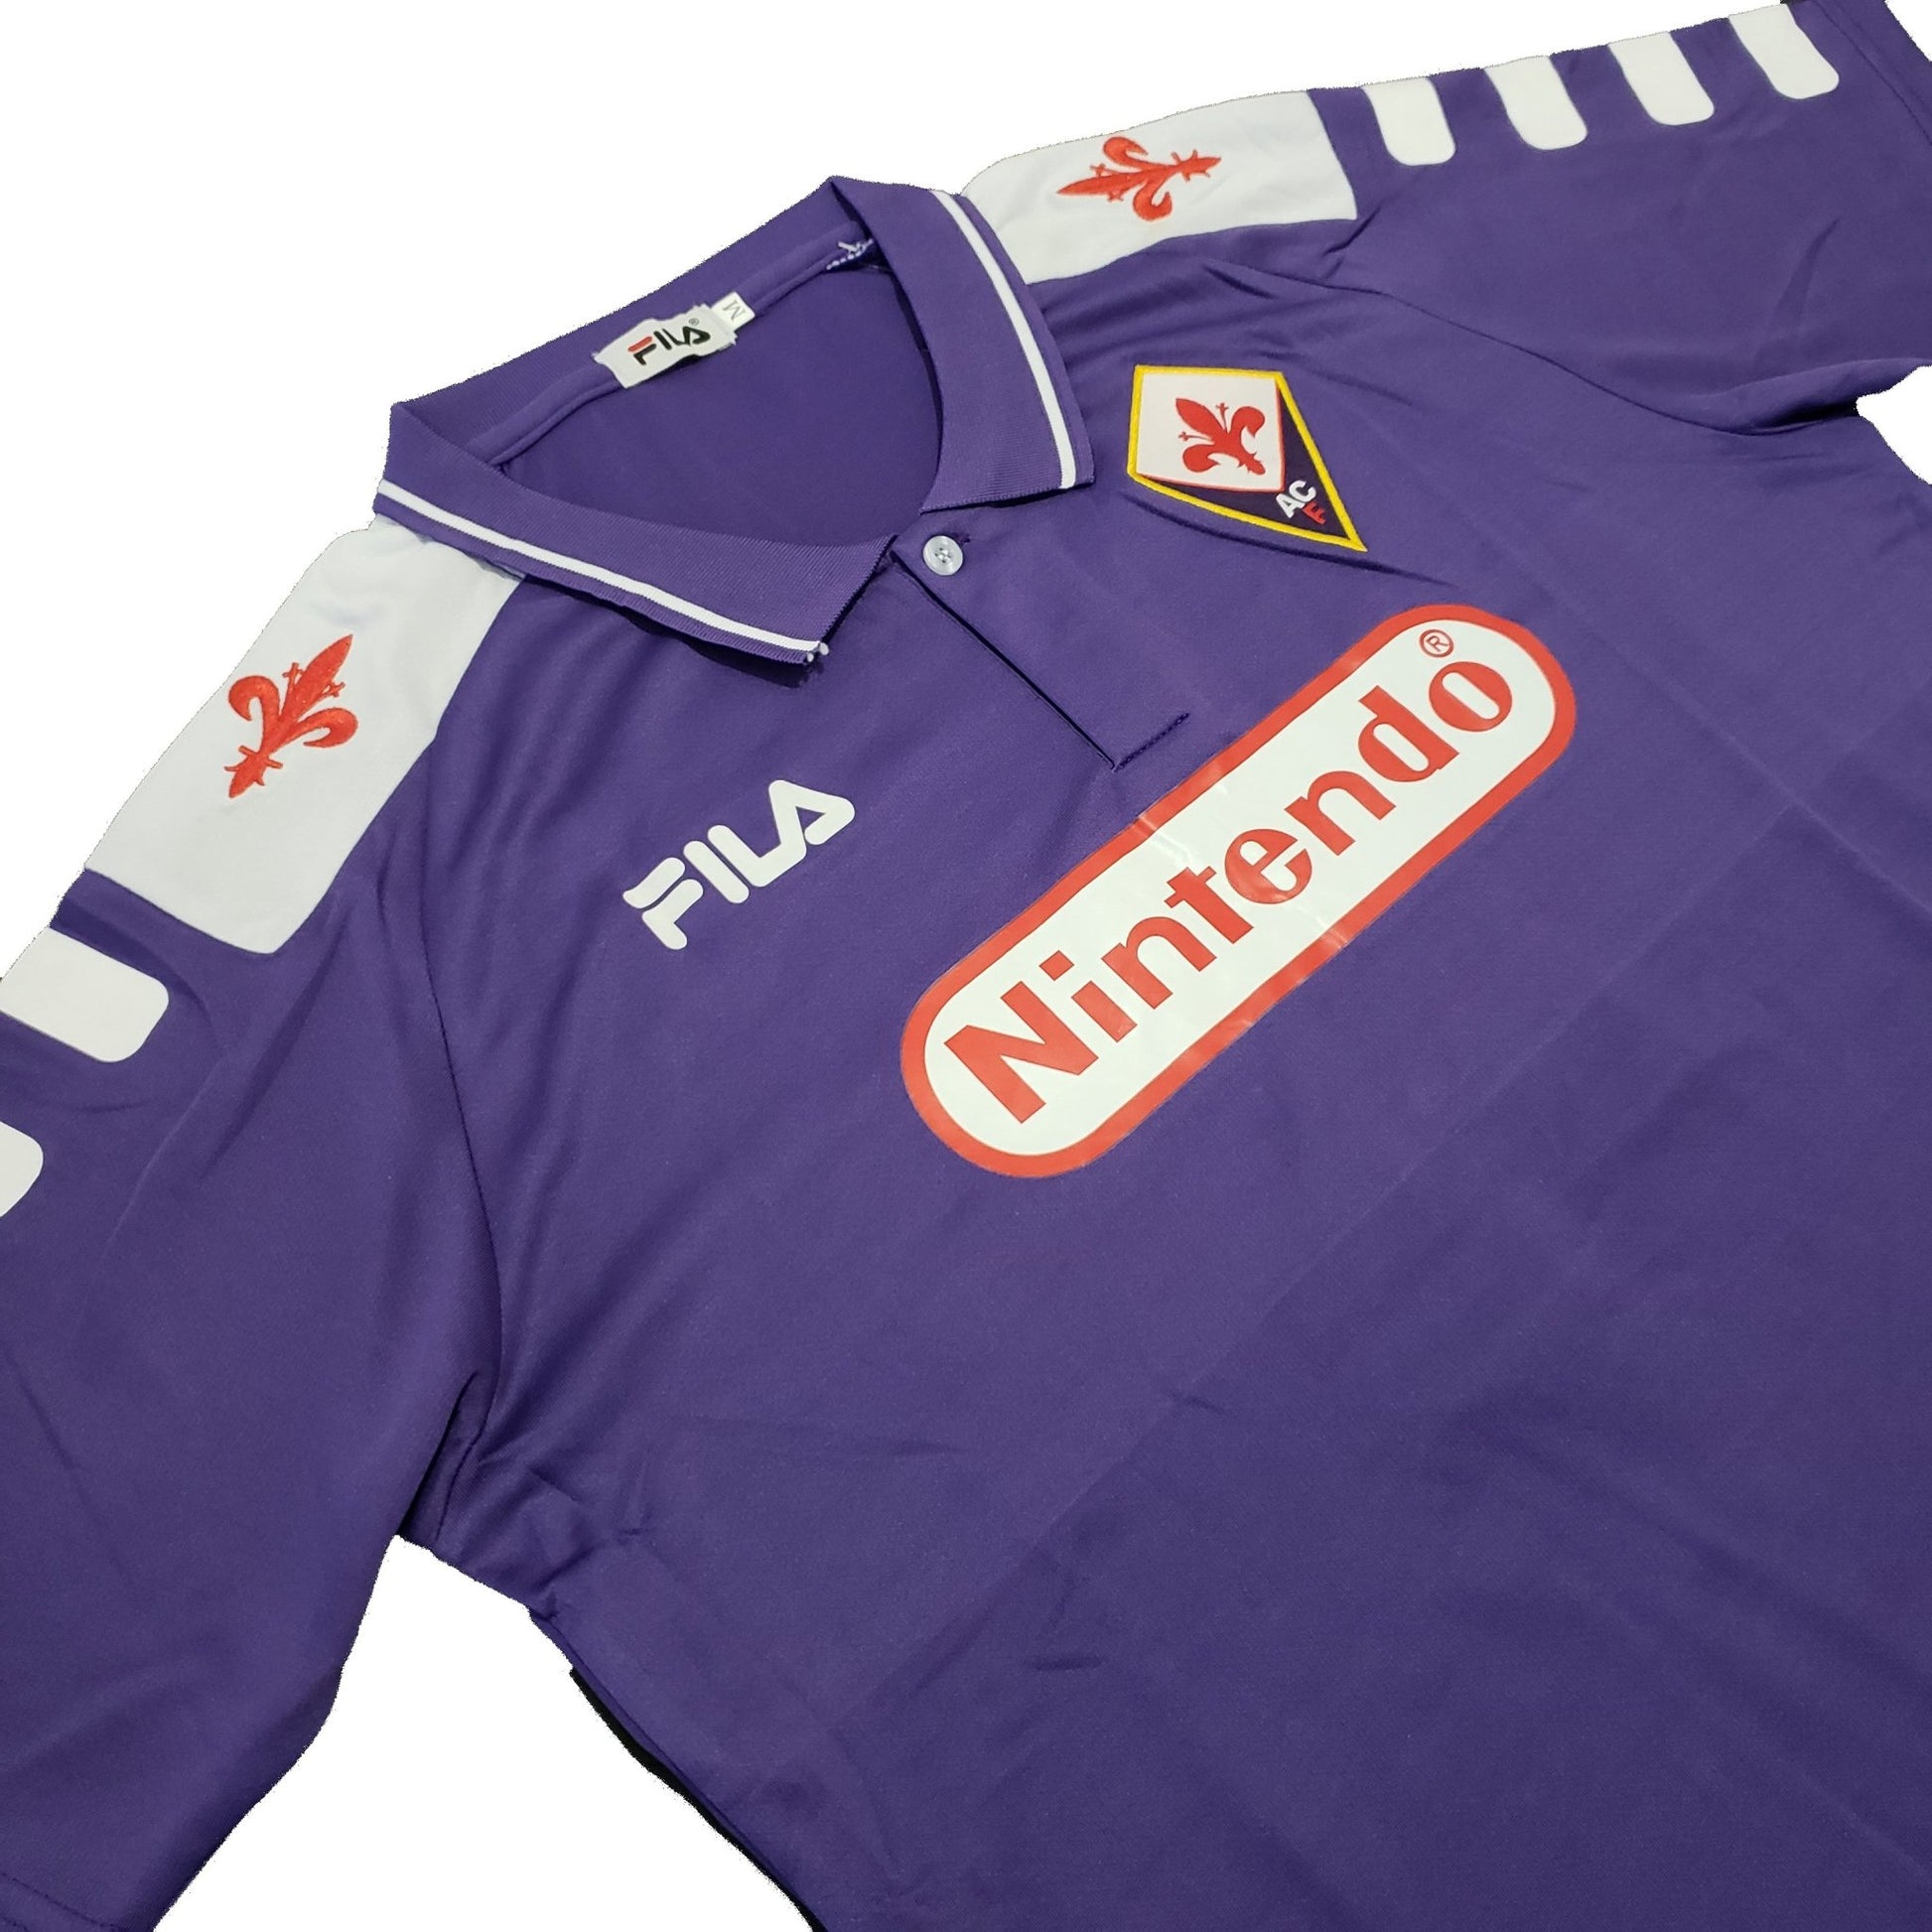 Fiorentina Titular 1998/99 - Batistuta - Thunder Internacional